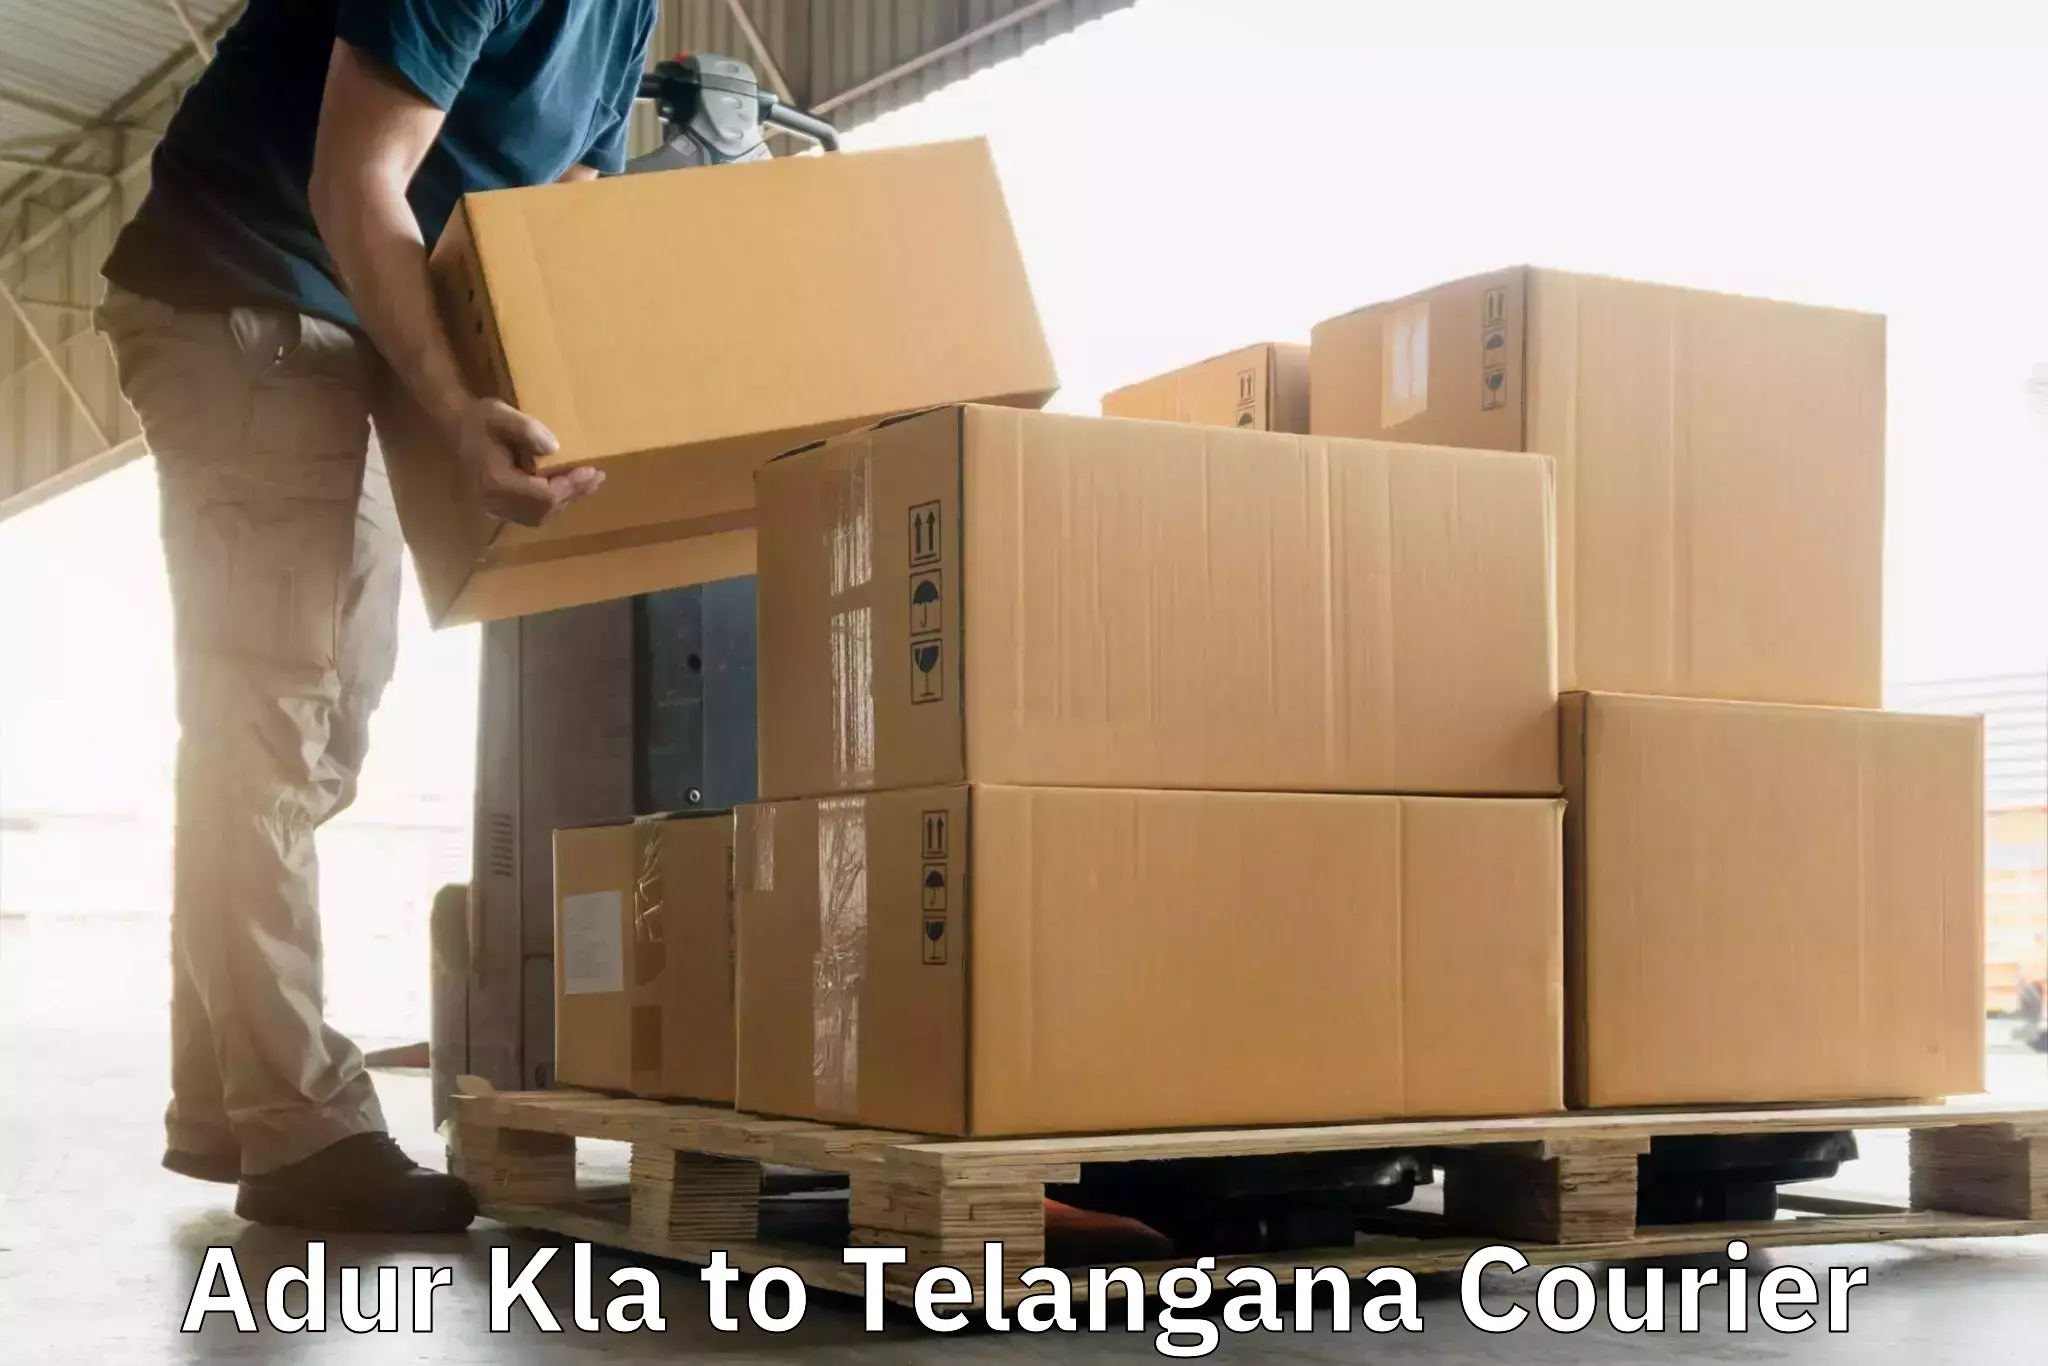 Cost-effective courier options Adur Kla to Achampet